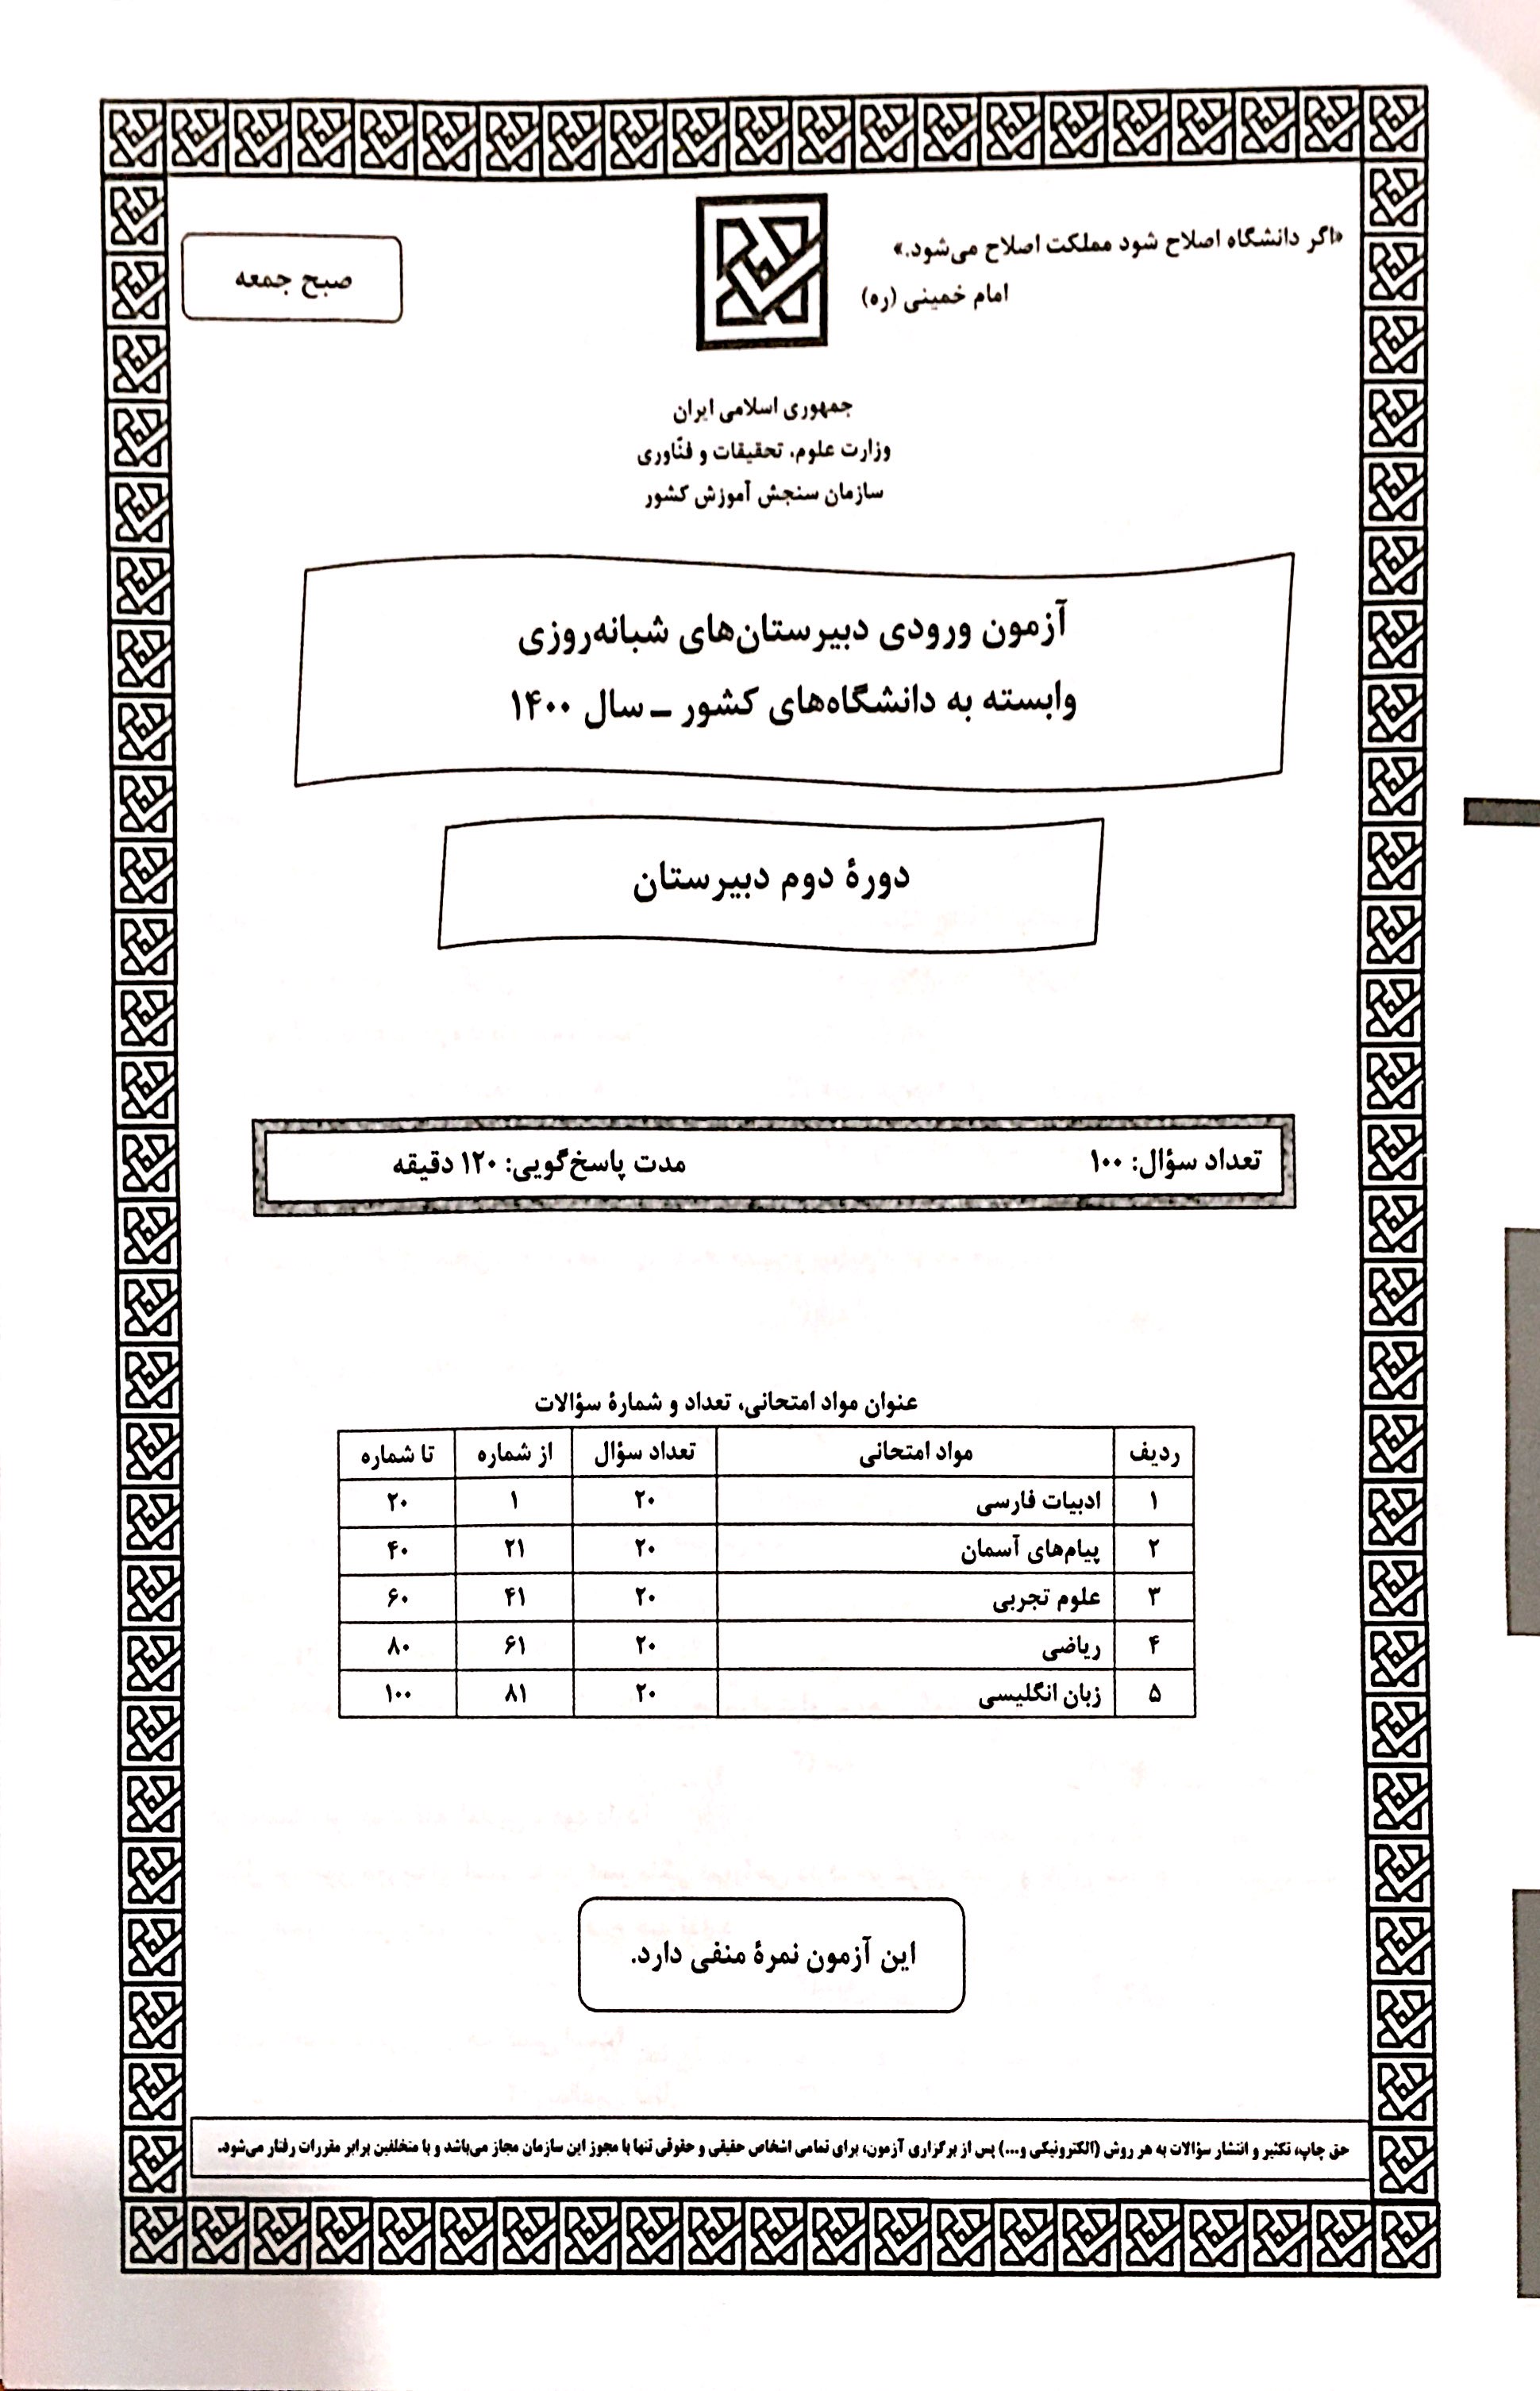 سوالات آزمون ورودی دبیرستان دانشگاه شهرستان زابل سال تحصیلی1400